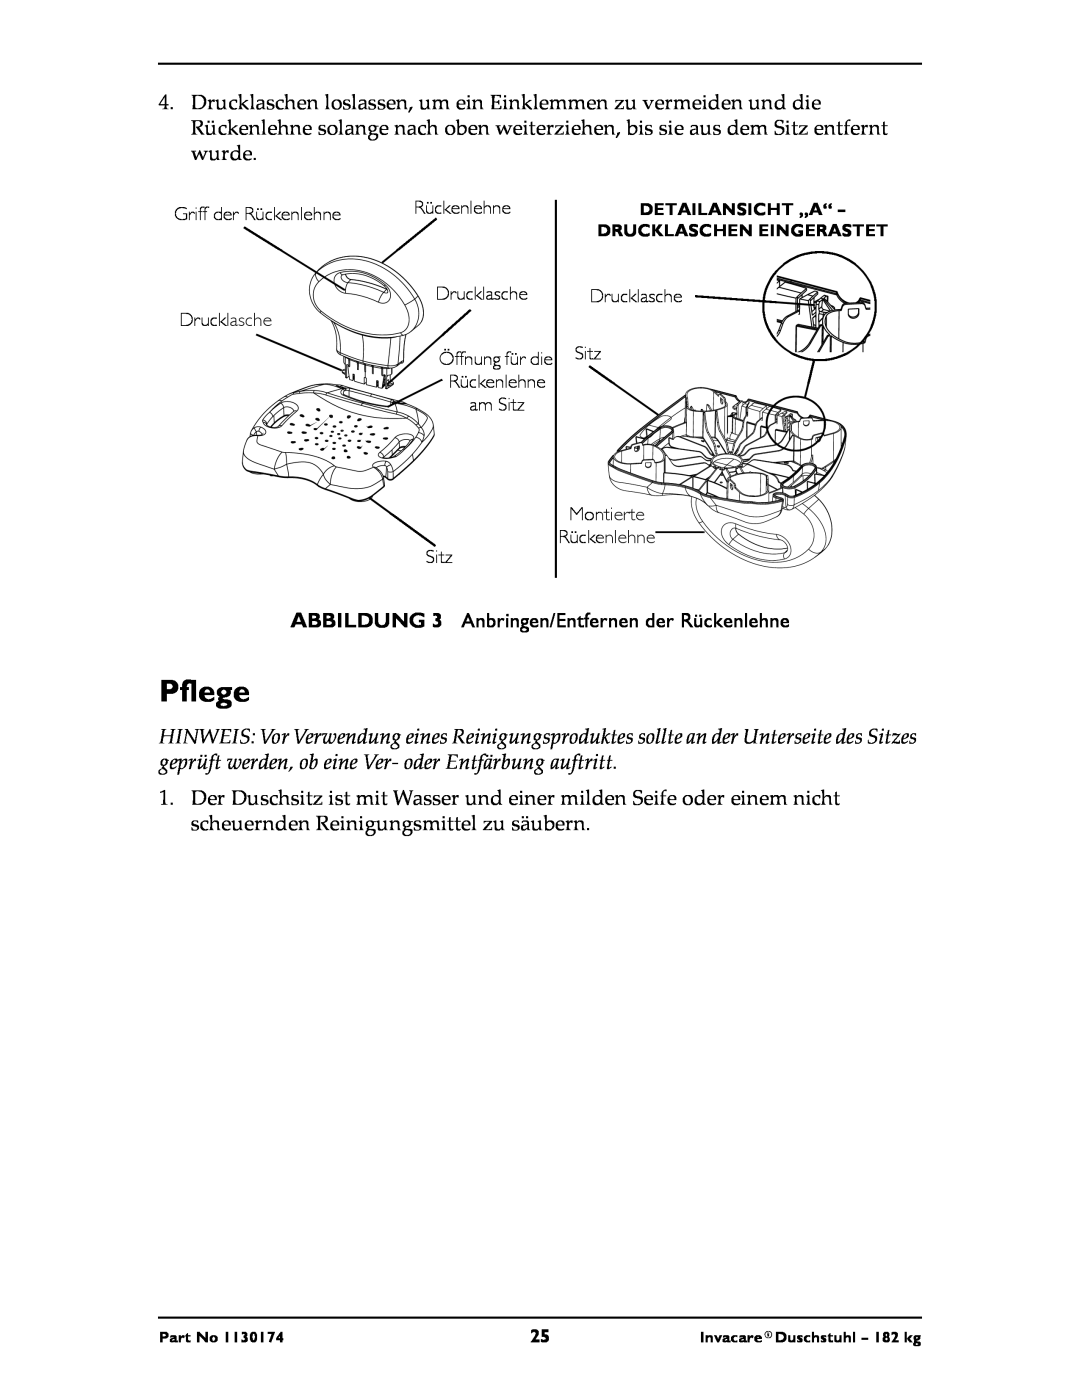 Invacare 9781E, 9780E instruction sheet Pflege, ABBILDUNG 3 Anbringen/Entfernen der Rückenlehne 